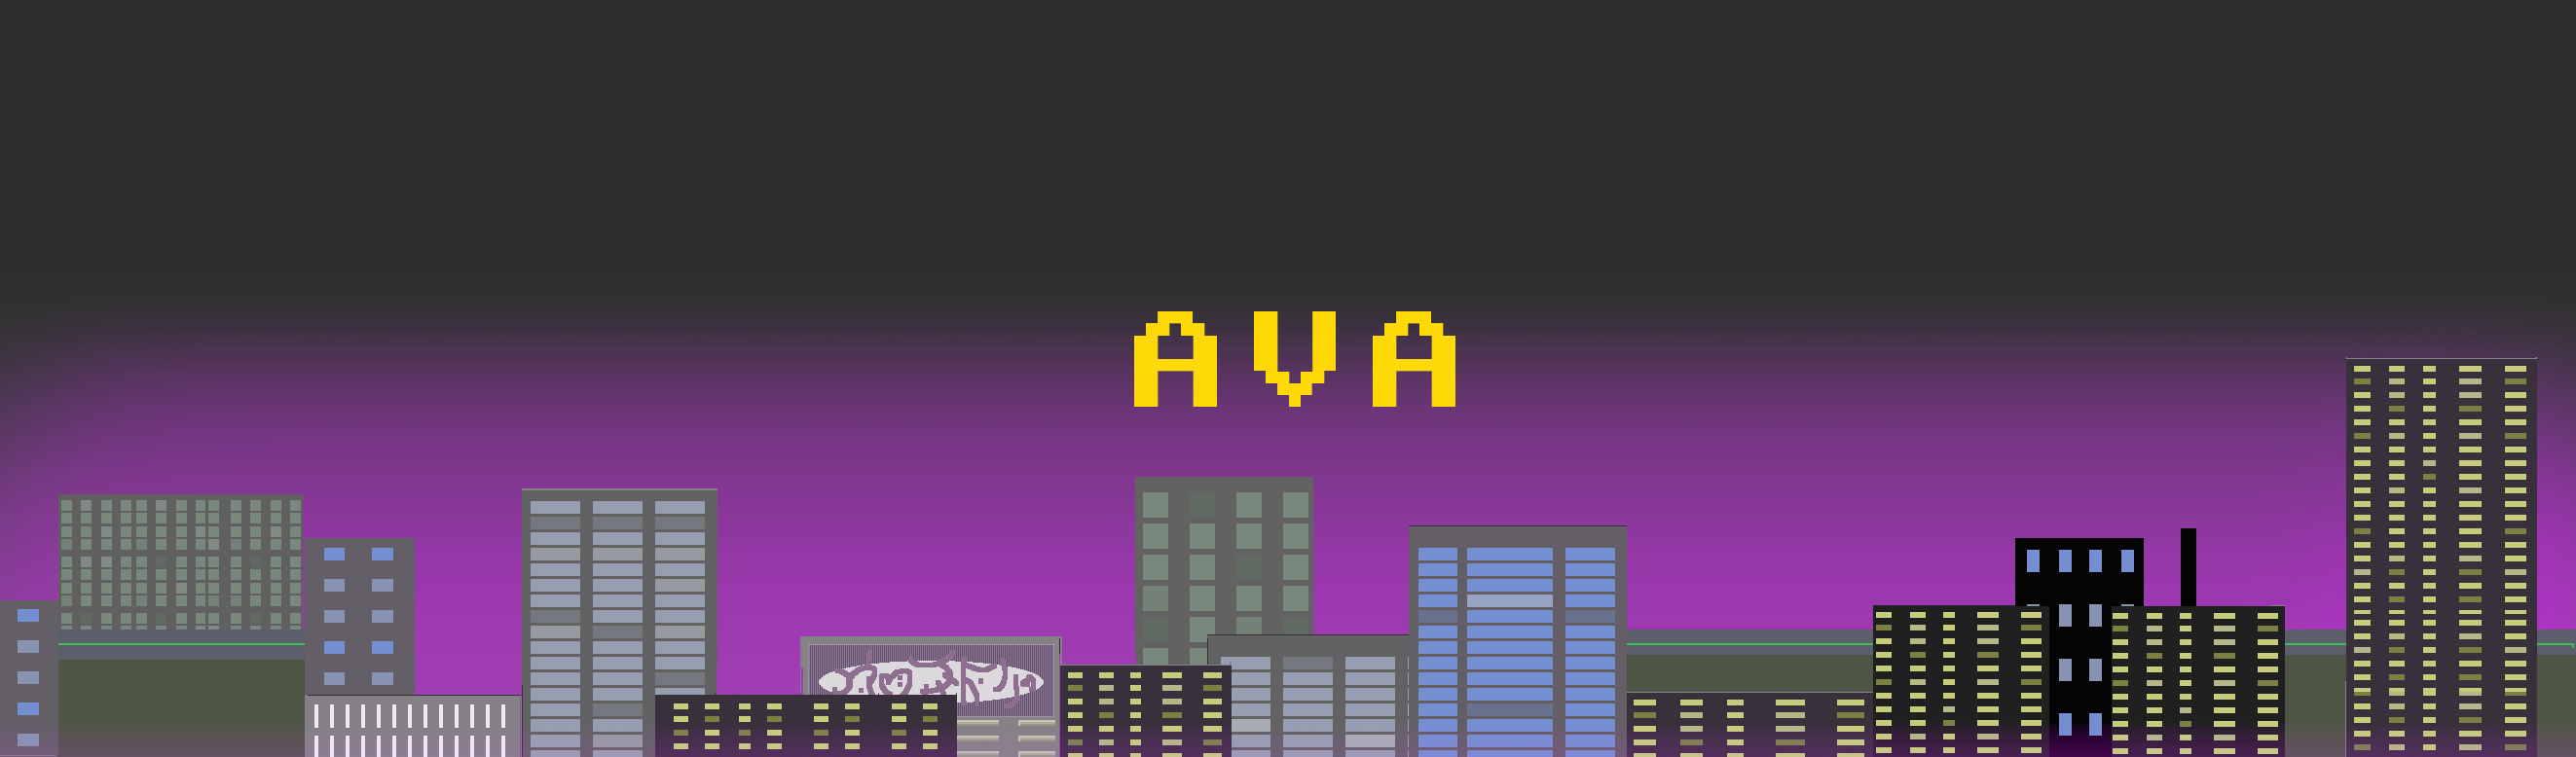 Ava